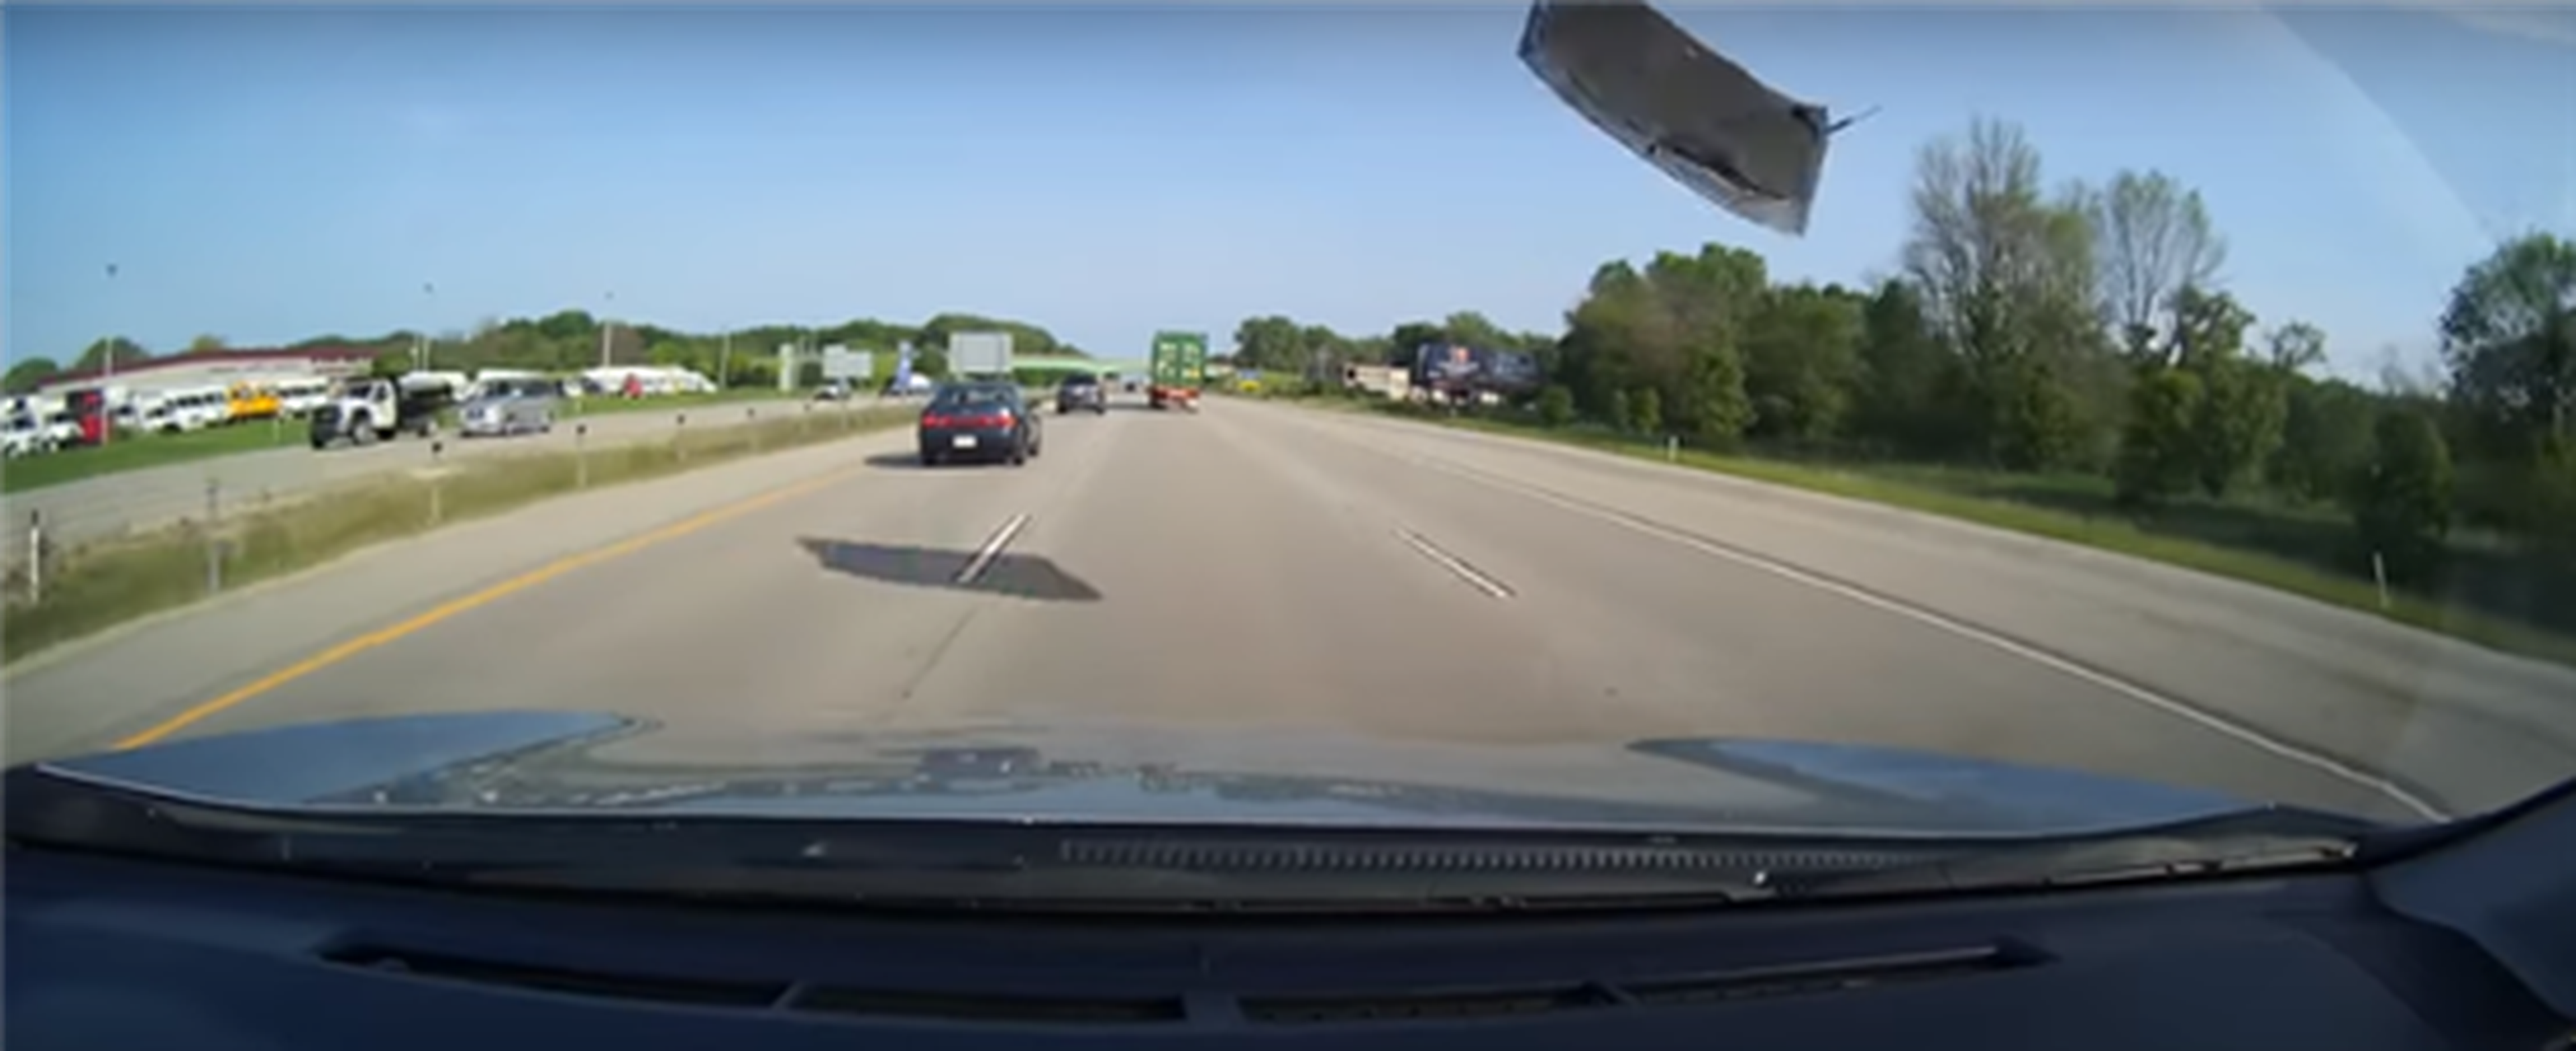 VÍDEO: El capó de un Toyota Camry sale volando y casi golpea a varios coches